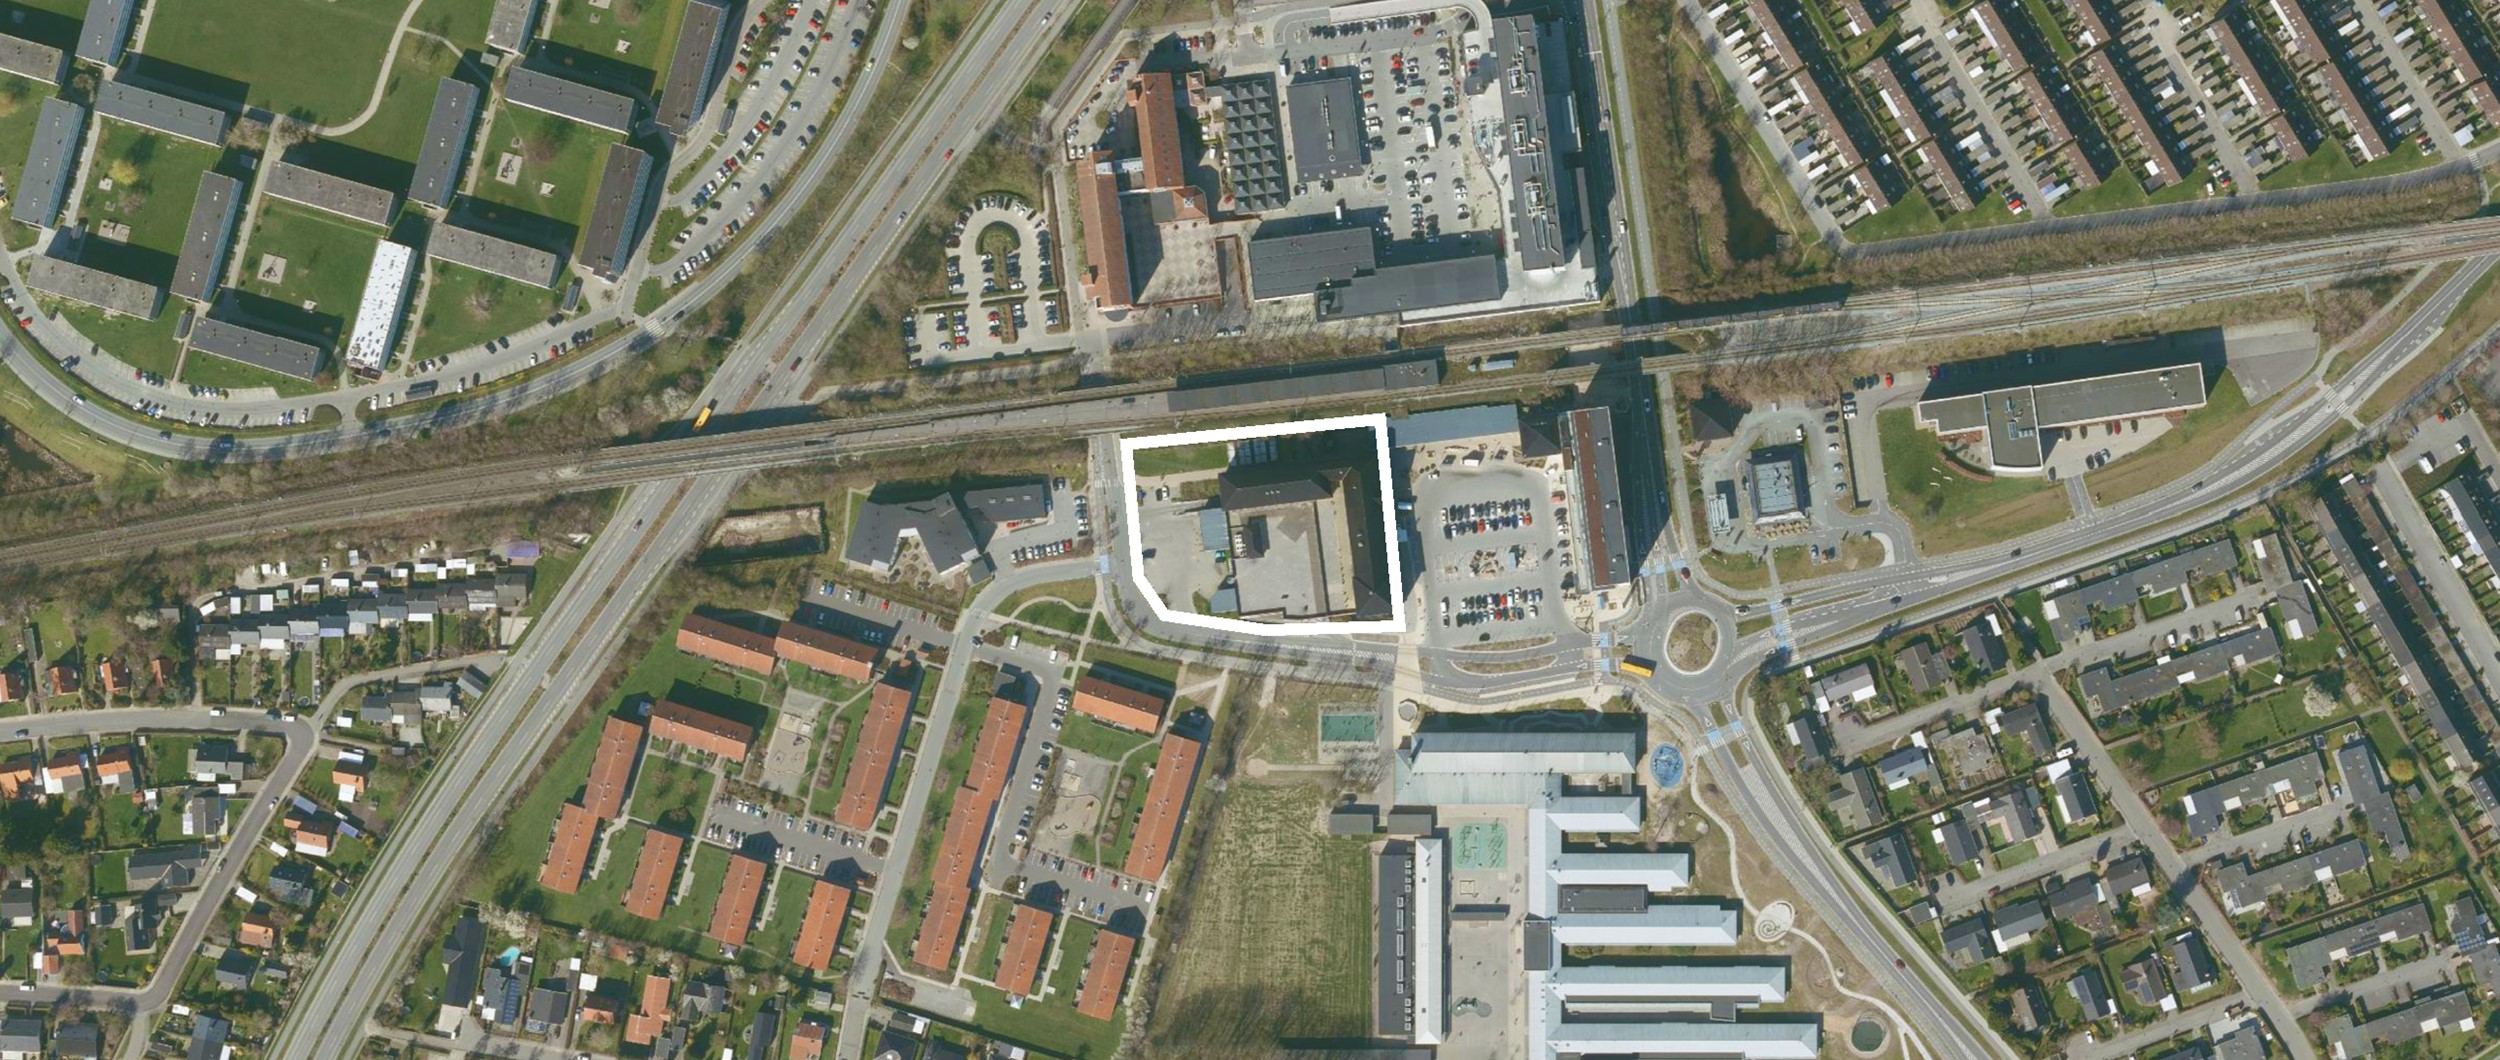 På denne attraktive grund ved Vallensbæk station ønsker vi at skabe en varieret og spændende bebyggelse af høj funktionel arkitektonisk kvalitet.